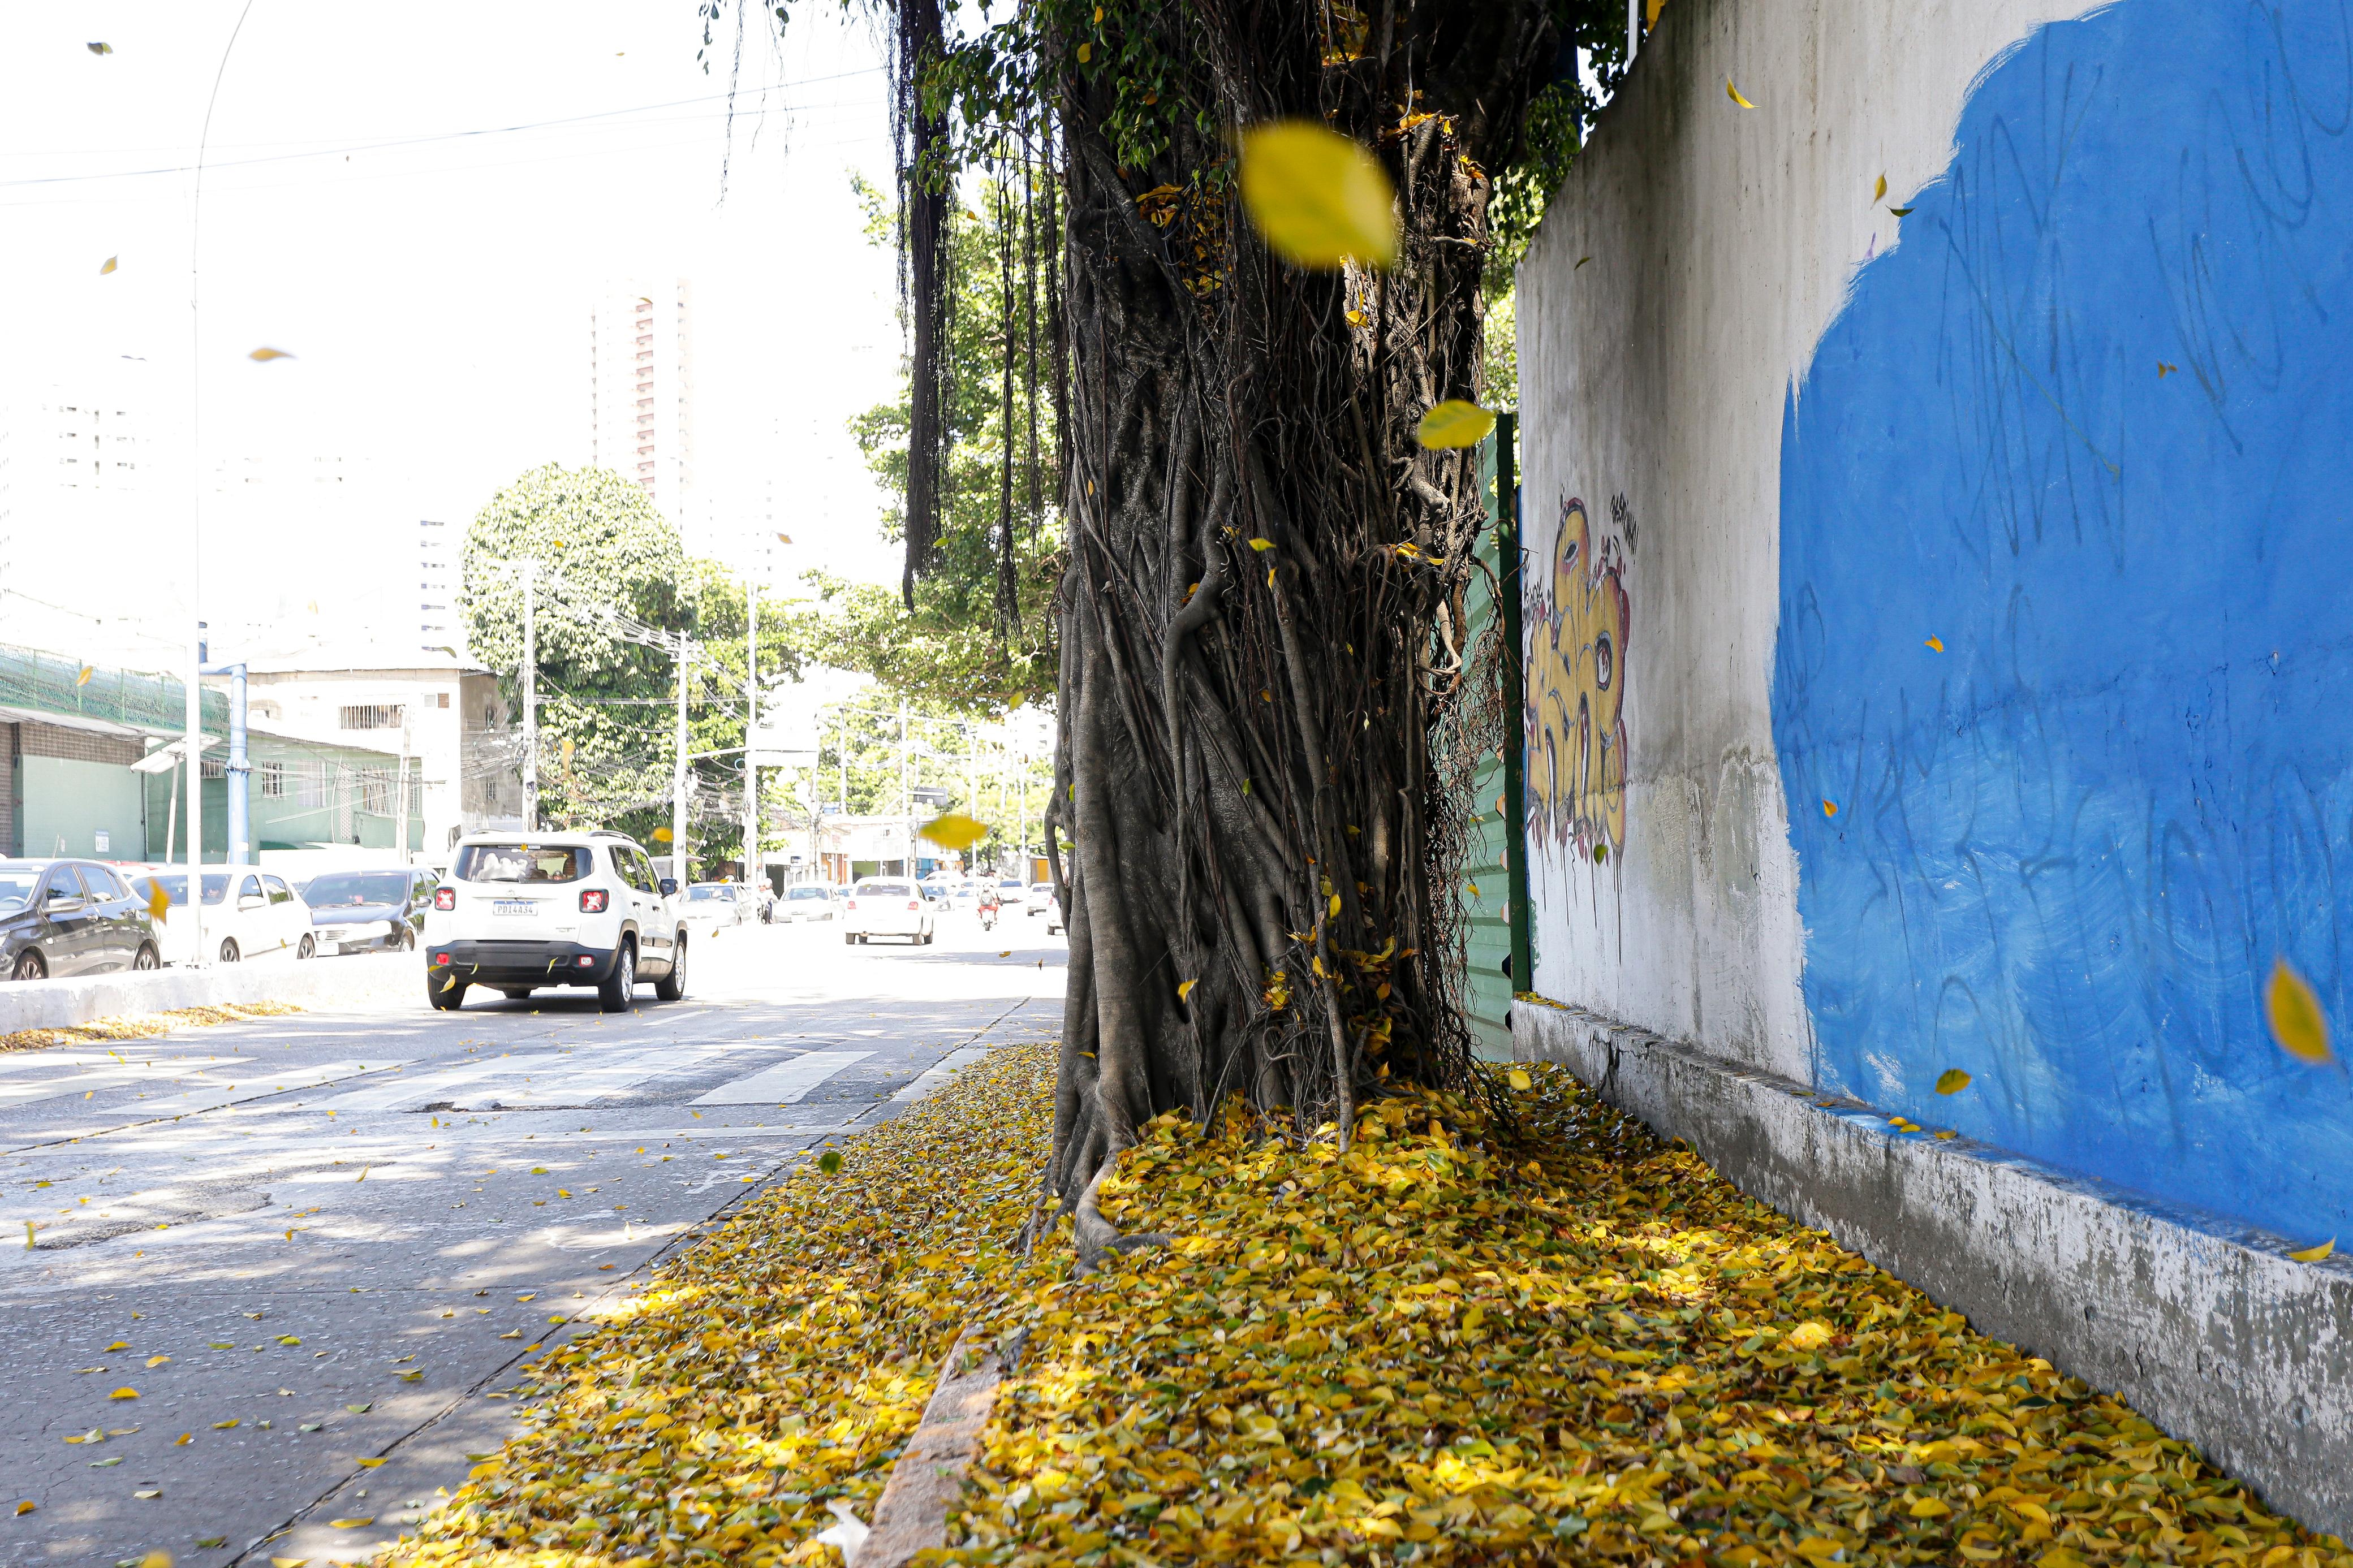 Foto de um trecho da avenida Norte, no Recife, durante o dia, iluminada pelo sol. À direita, há um muro com raízes de árvore crescendo junto dele e uma pintura azul desbotada. Uma árvore robusta está parcialmente visível, com muitas de suas folhas amarelas caídas no chão, criando um tapete natural ao longo da calçada e da rua. Ao fundo, carros estão estacionados ao lado de edifícios baixos sob um céu claro.